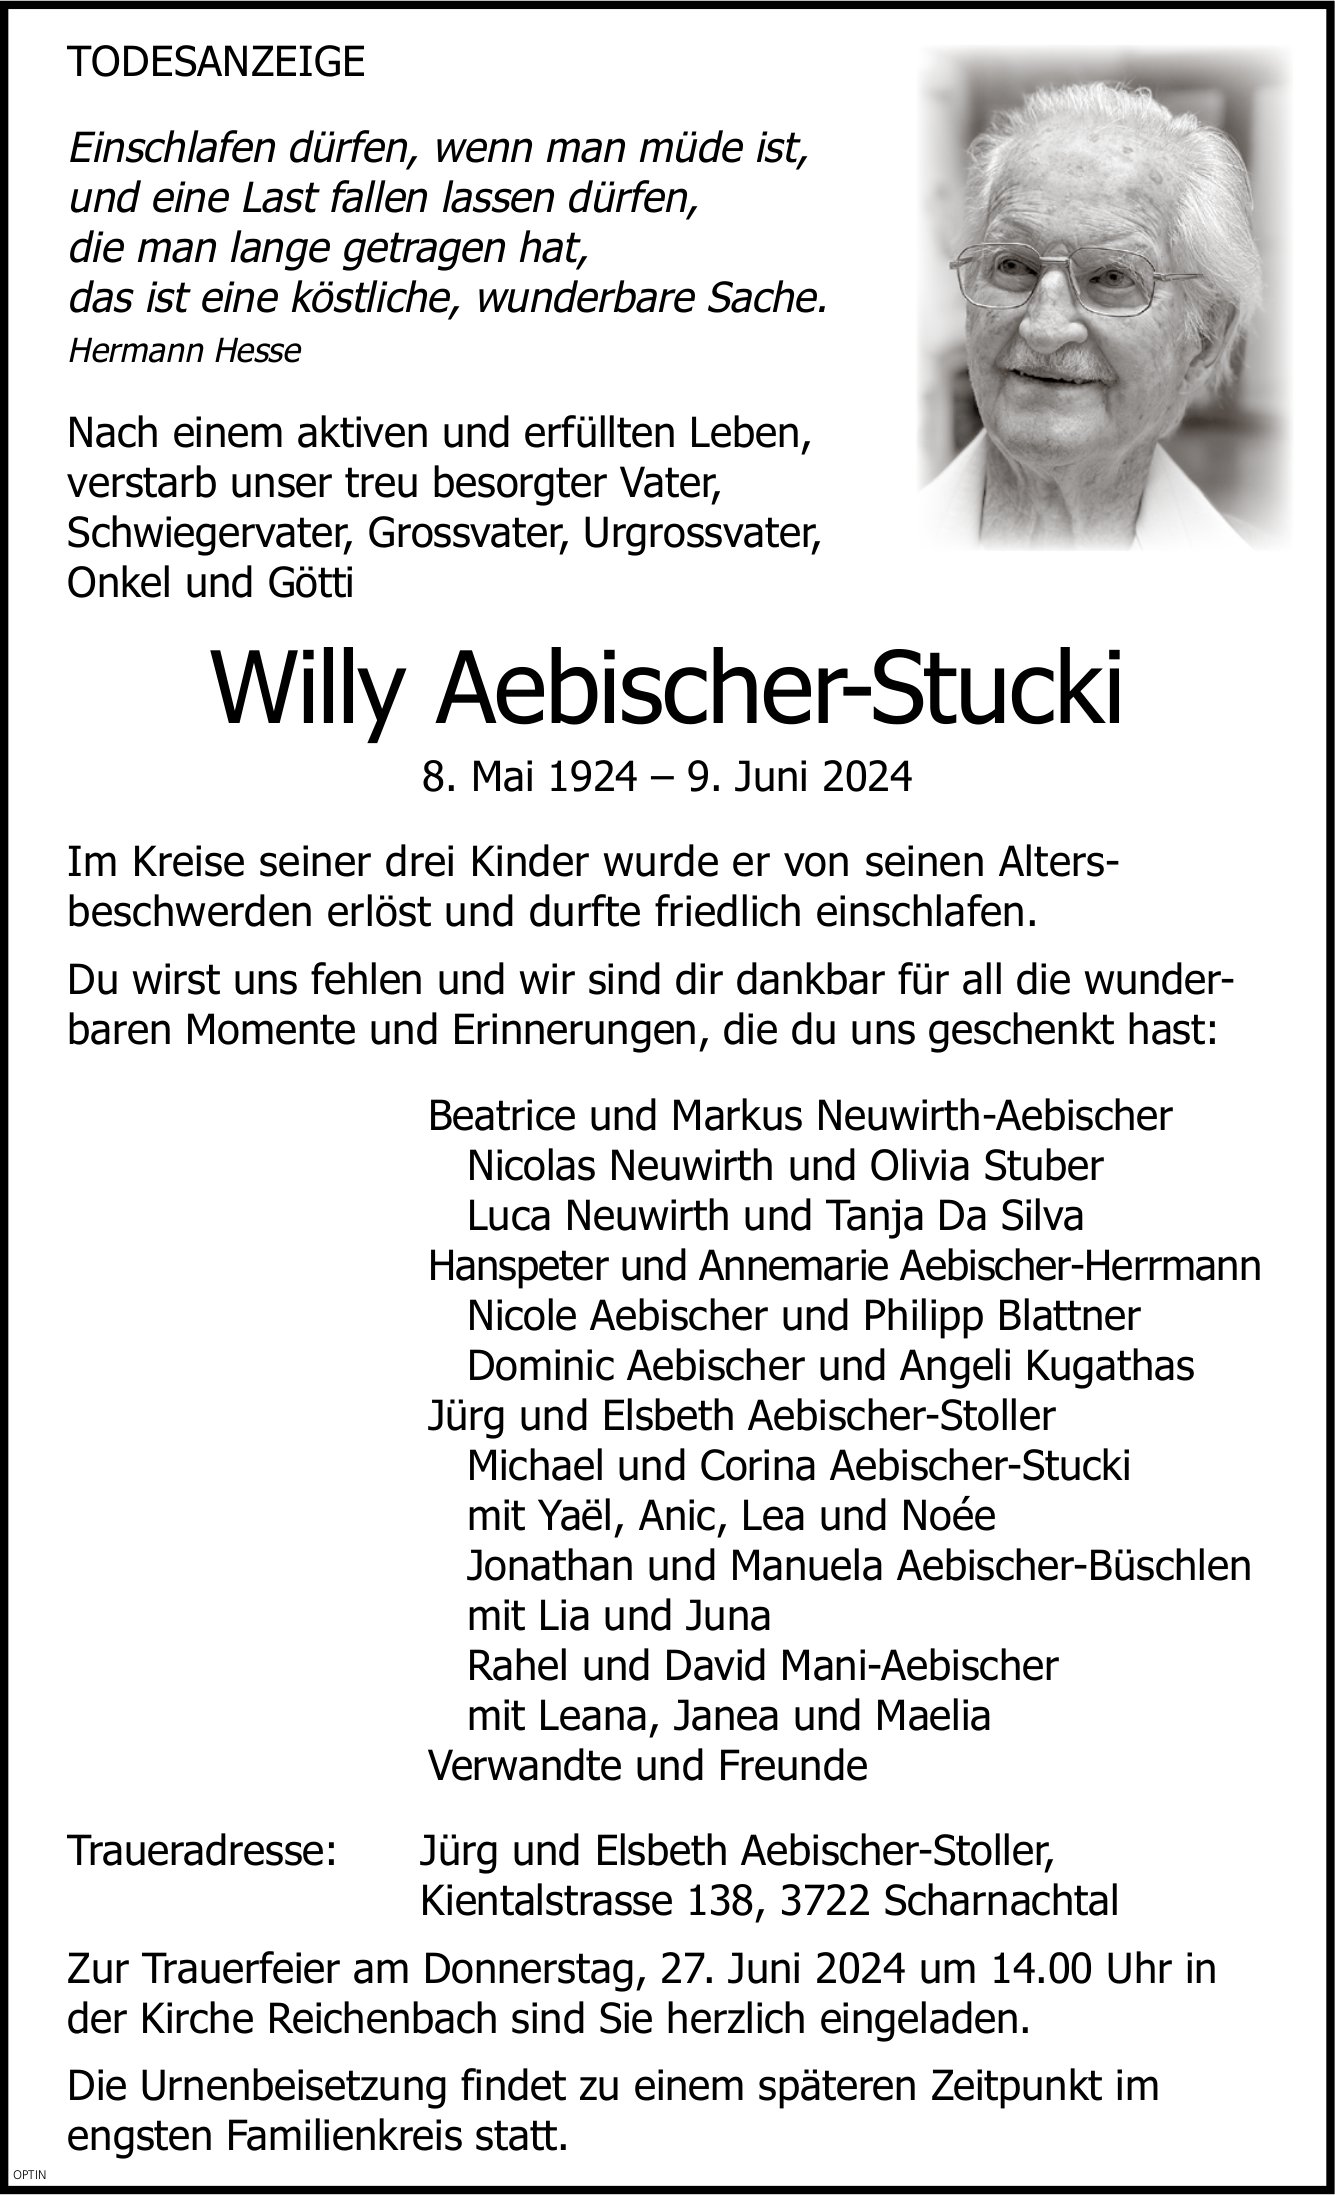 Willy Aebischer-Stucki, Juni 2024 / TA